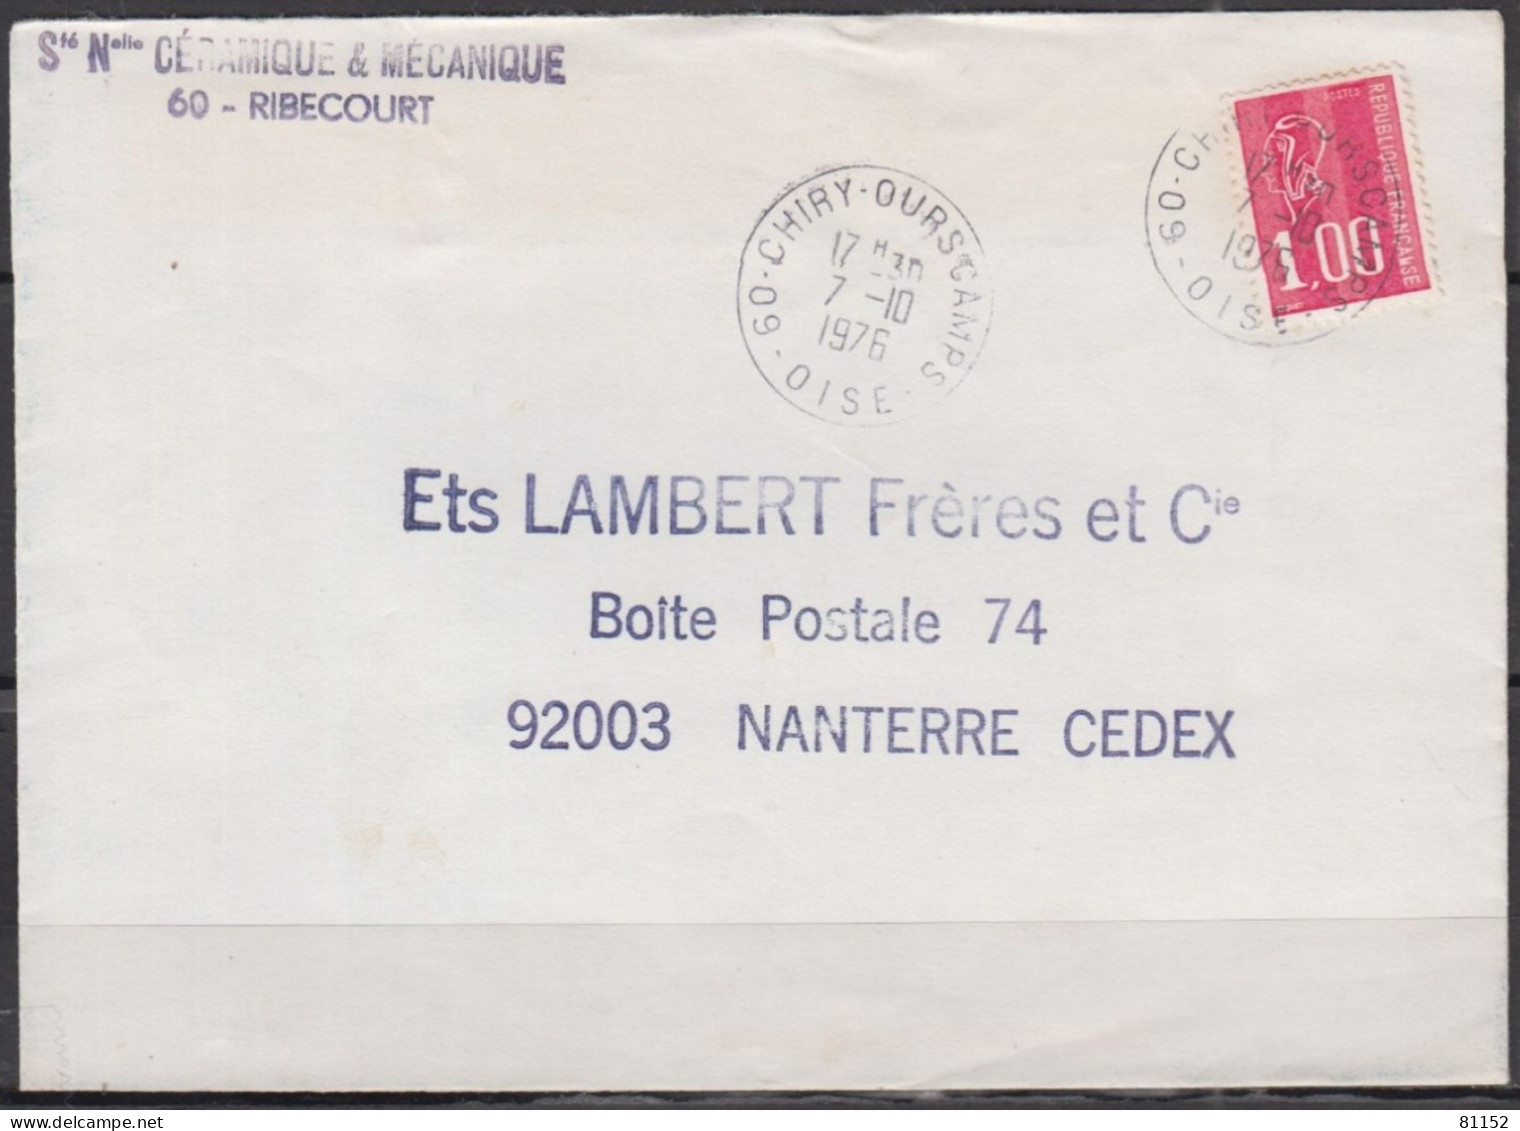 2 Lettres  Pub De 60 RIBECOURT 1976 Et 1977 Pour 92 NANTERRE Avec Mne De BEQUET 1.00F Postées à 60 CHIRY-OURSCAMPS - 1971-1976 Marianne De Béquet